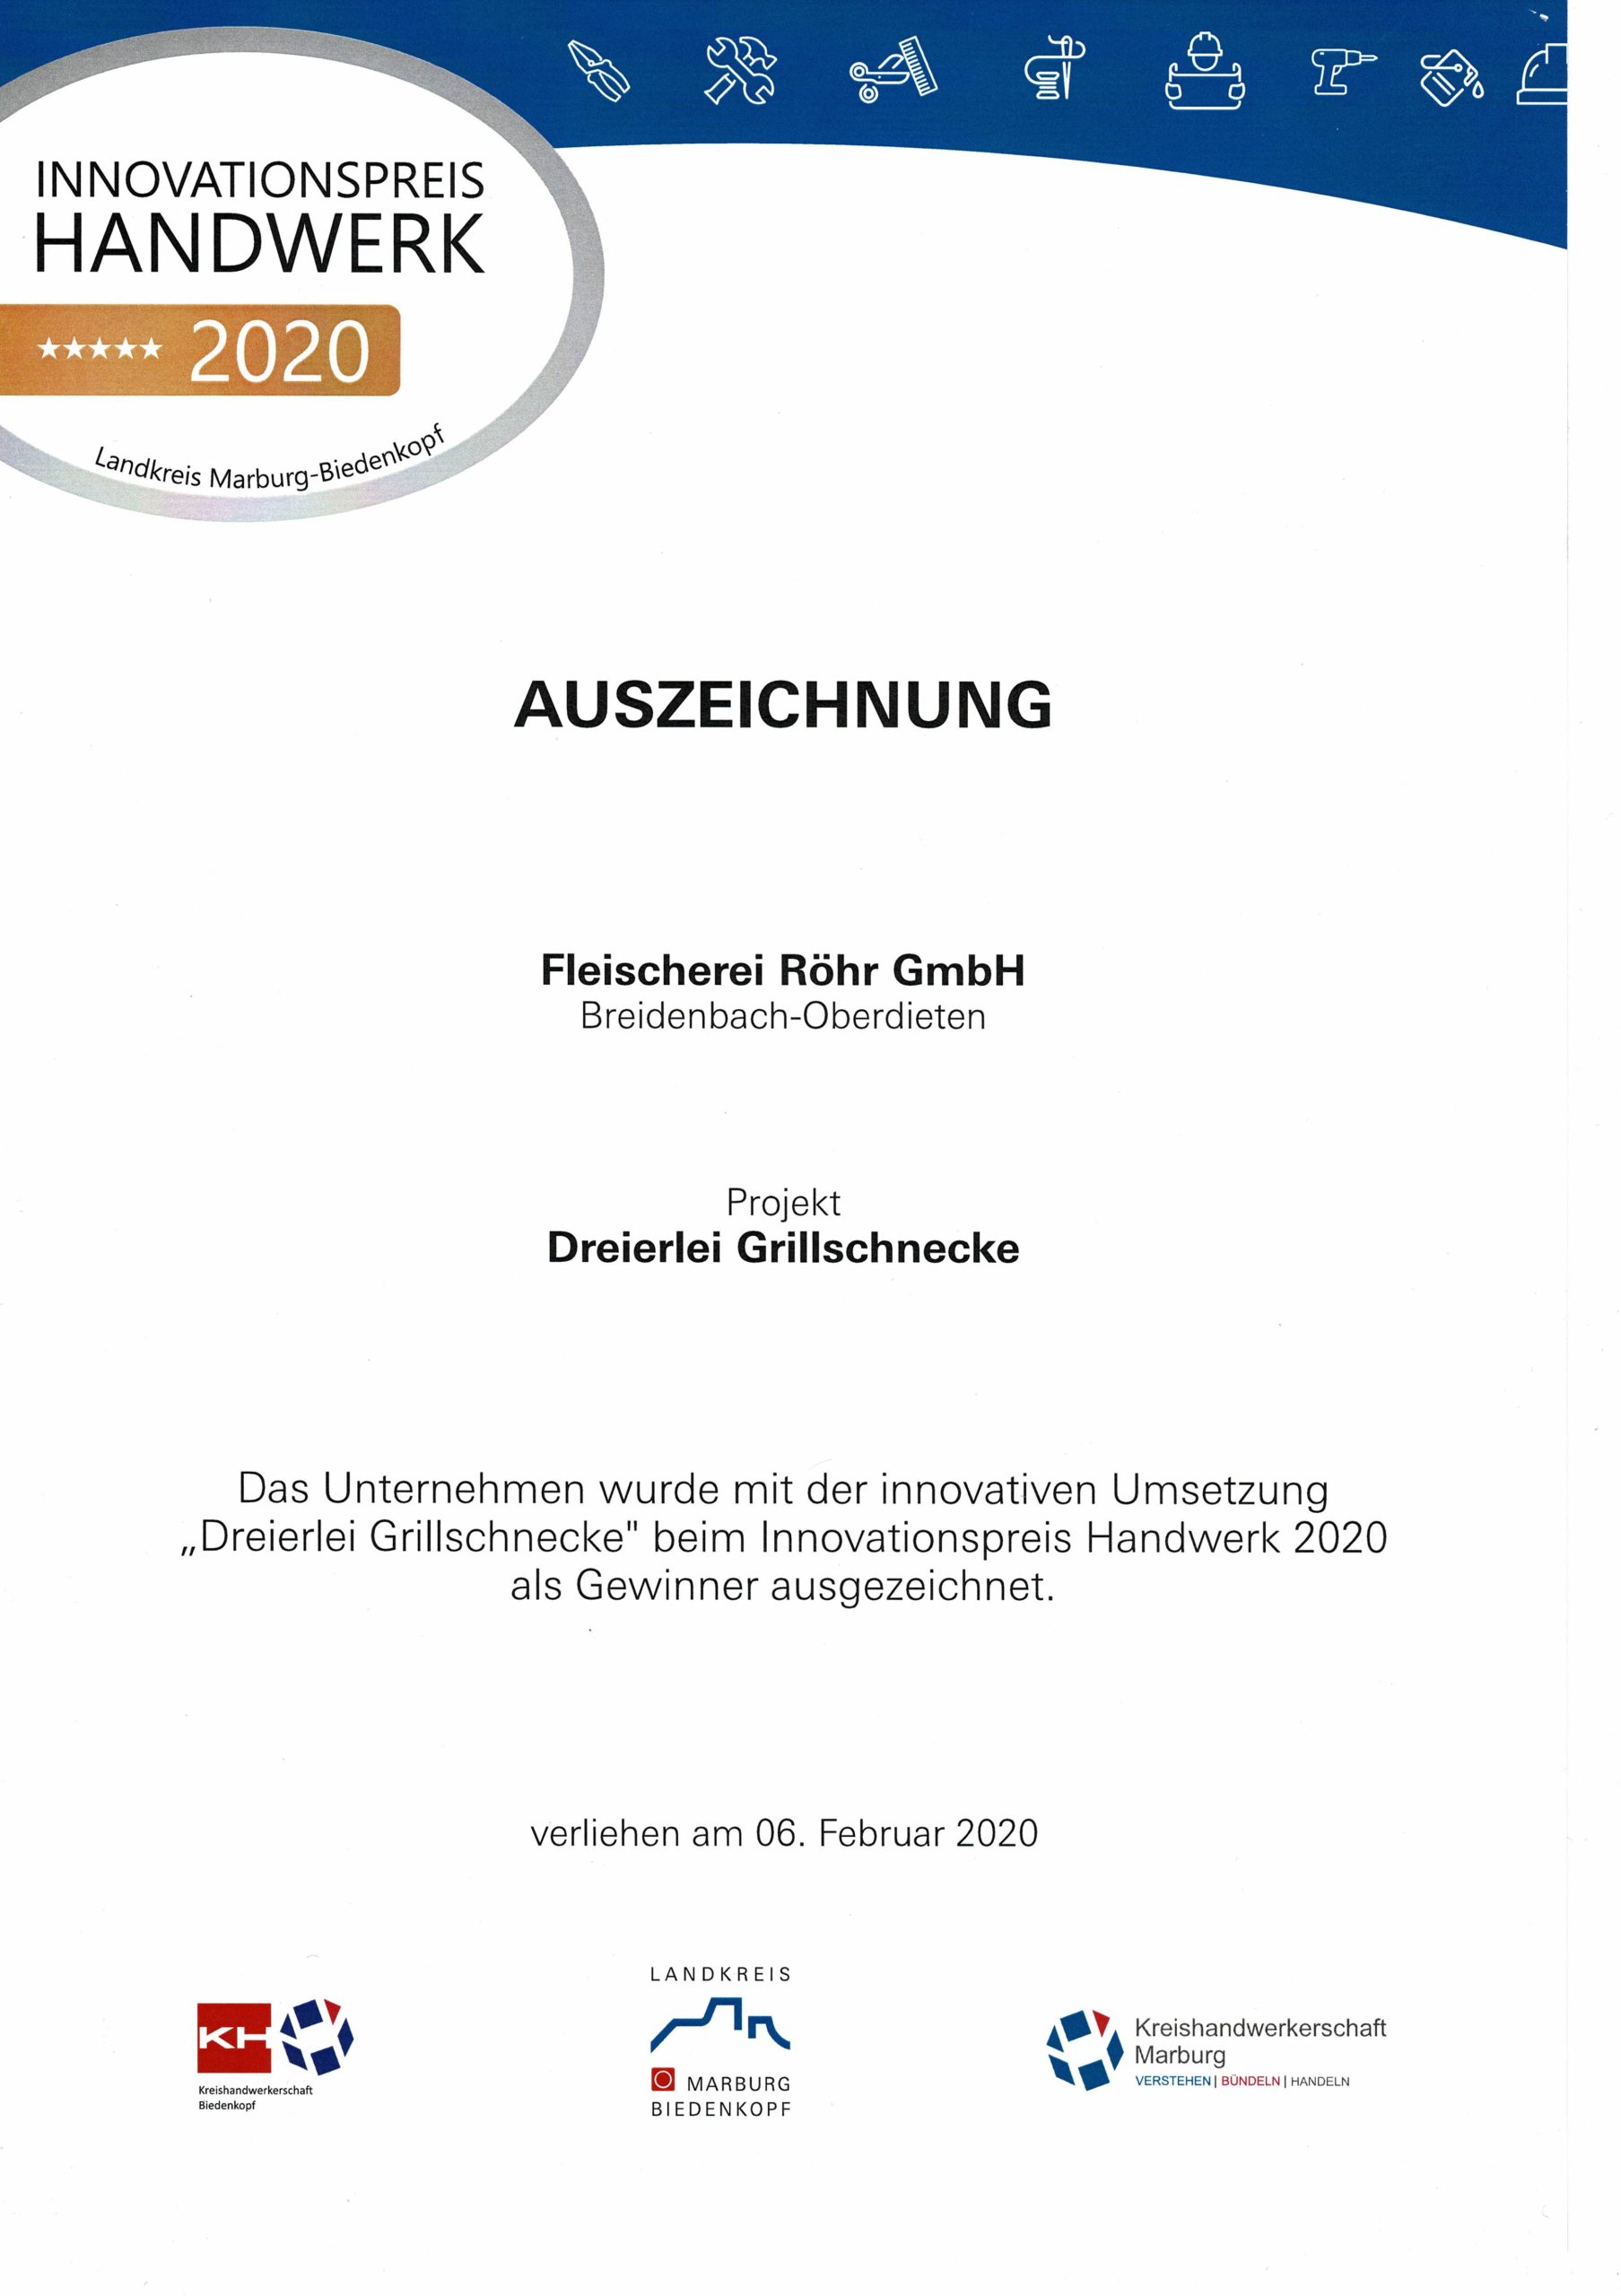 Innovationspreis Handwerk 2020 für Dreierlei Grillschnecke